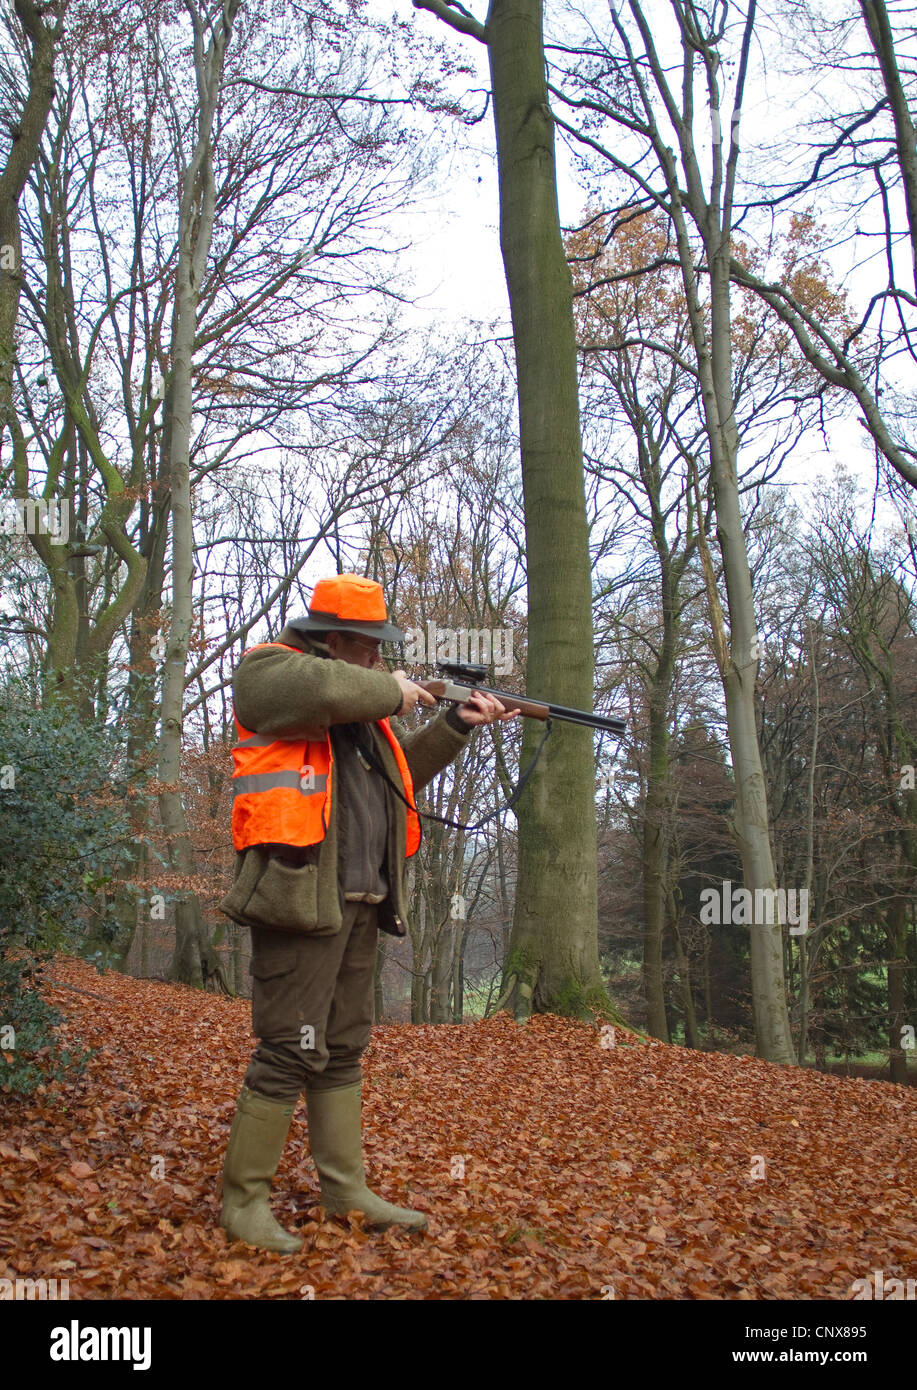 Shooter d'une battue debout dans une forêt de hêtres en automne avec la carabine de niveau, Allemagne Banque D'Images